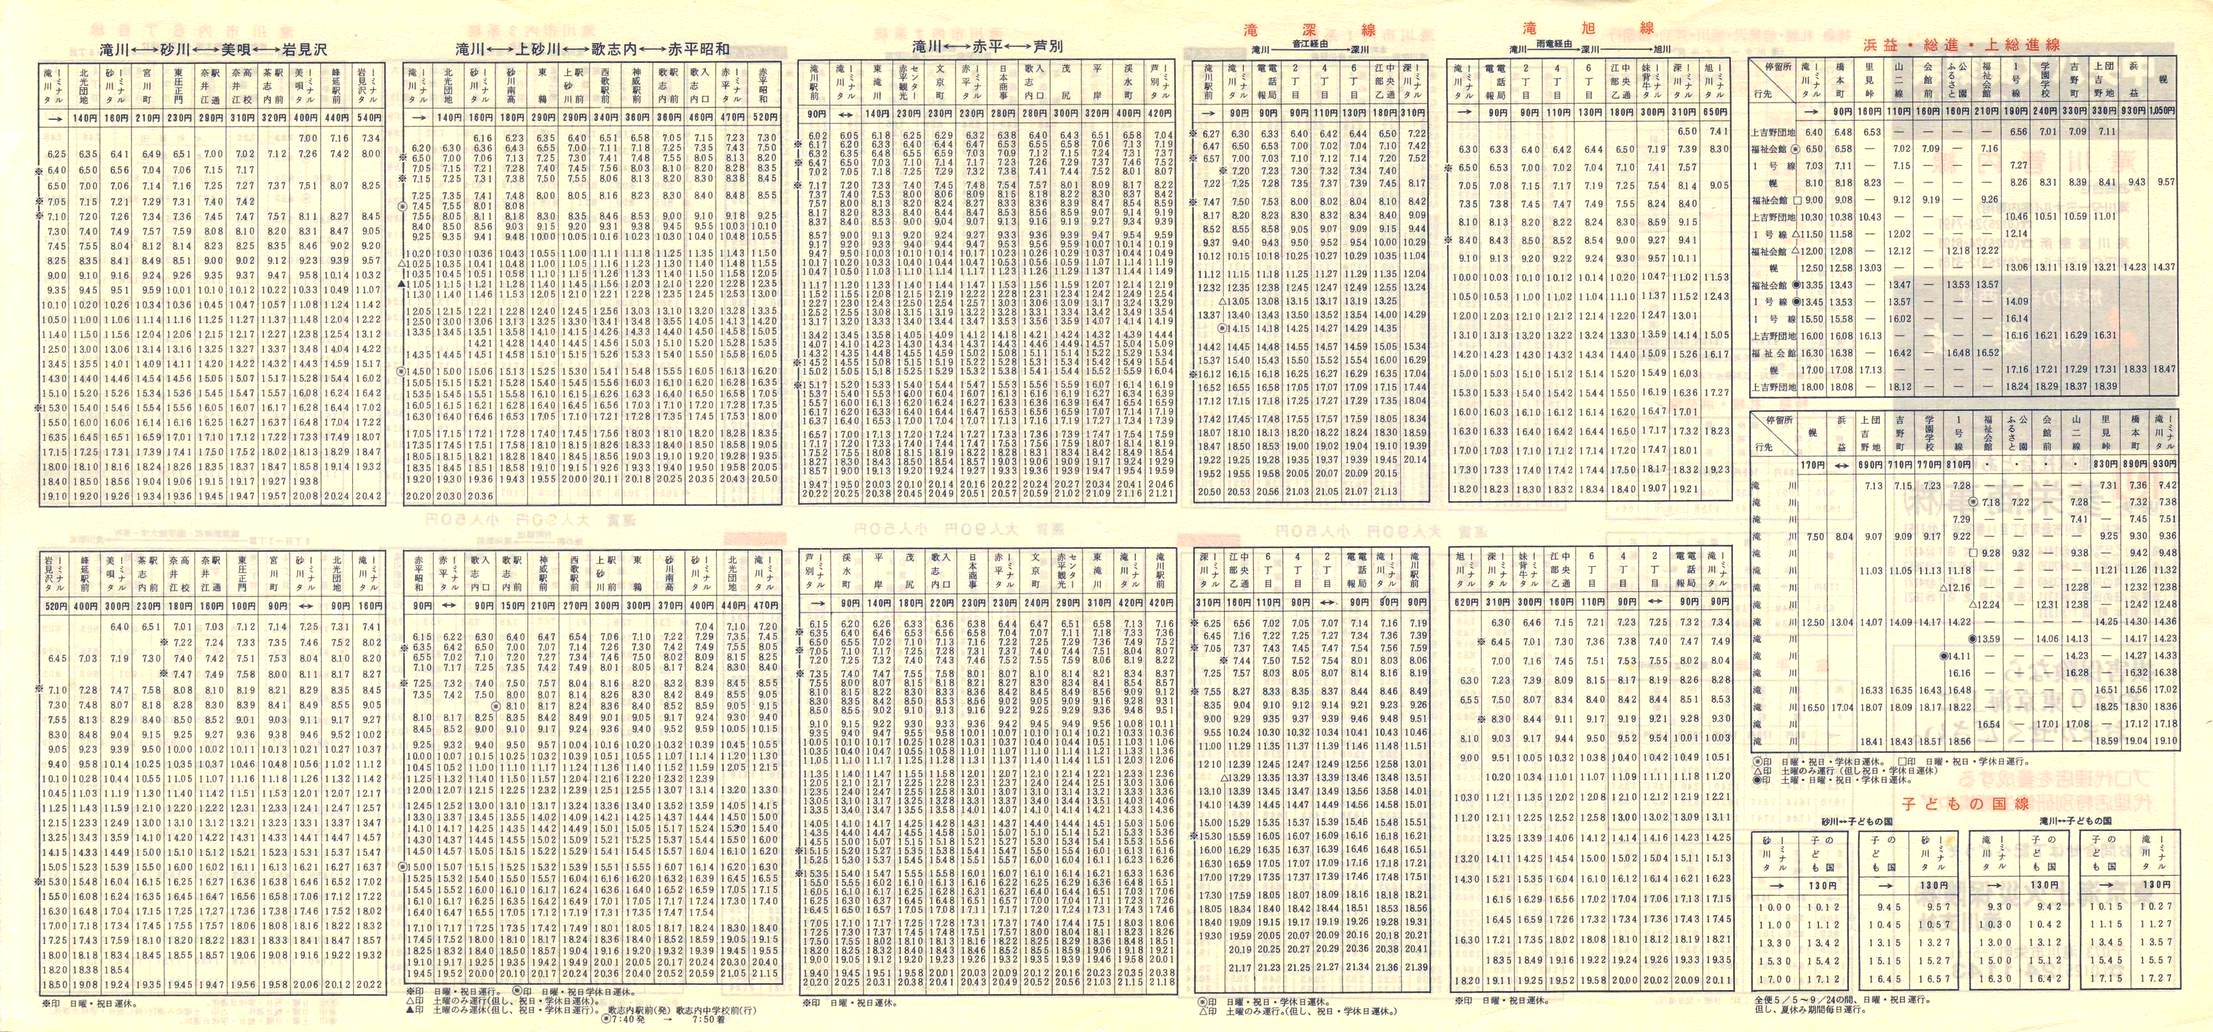 1984-04-10改正_北海道中央バス(空知)_滝川管内線時刻表裏面